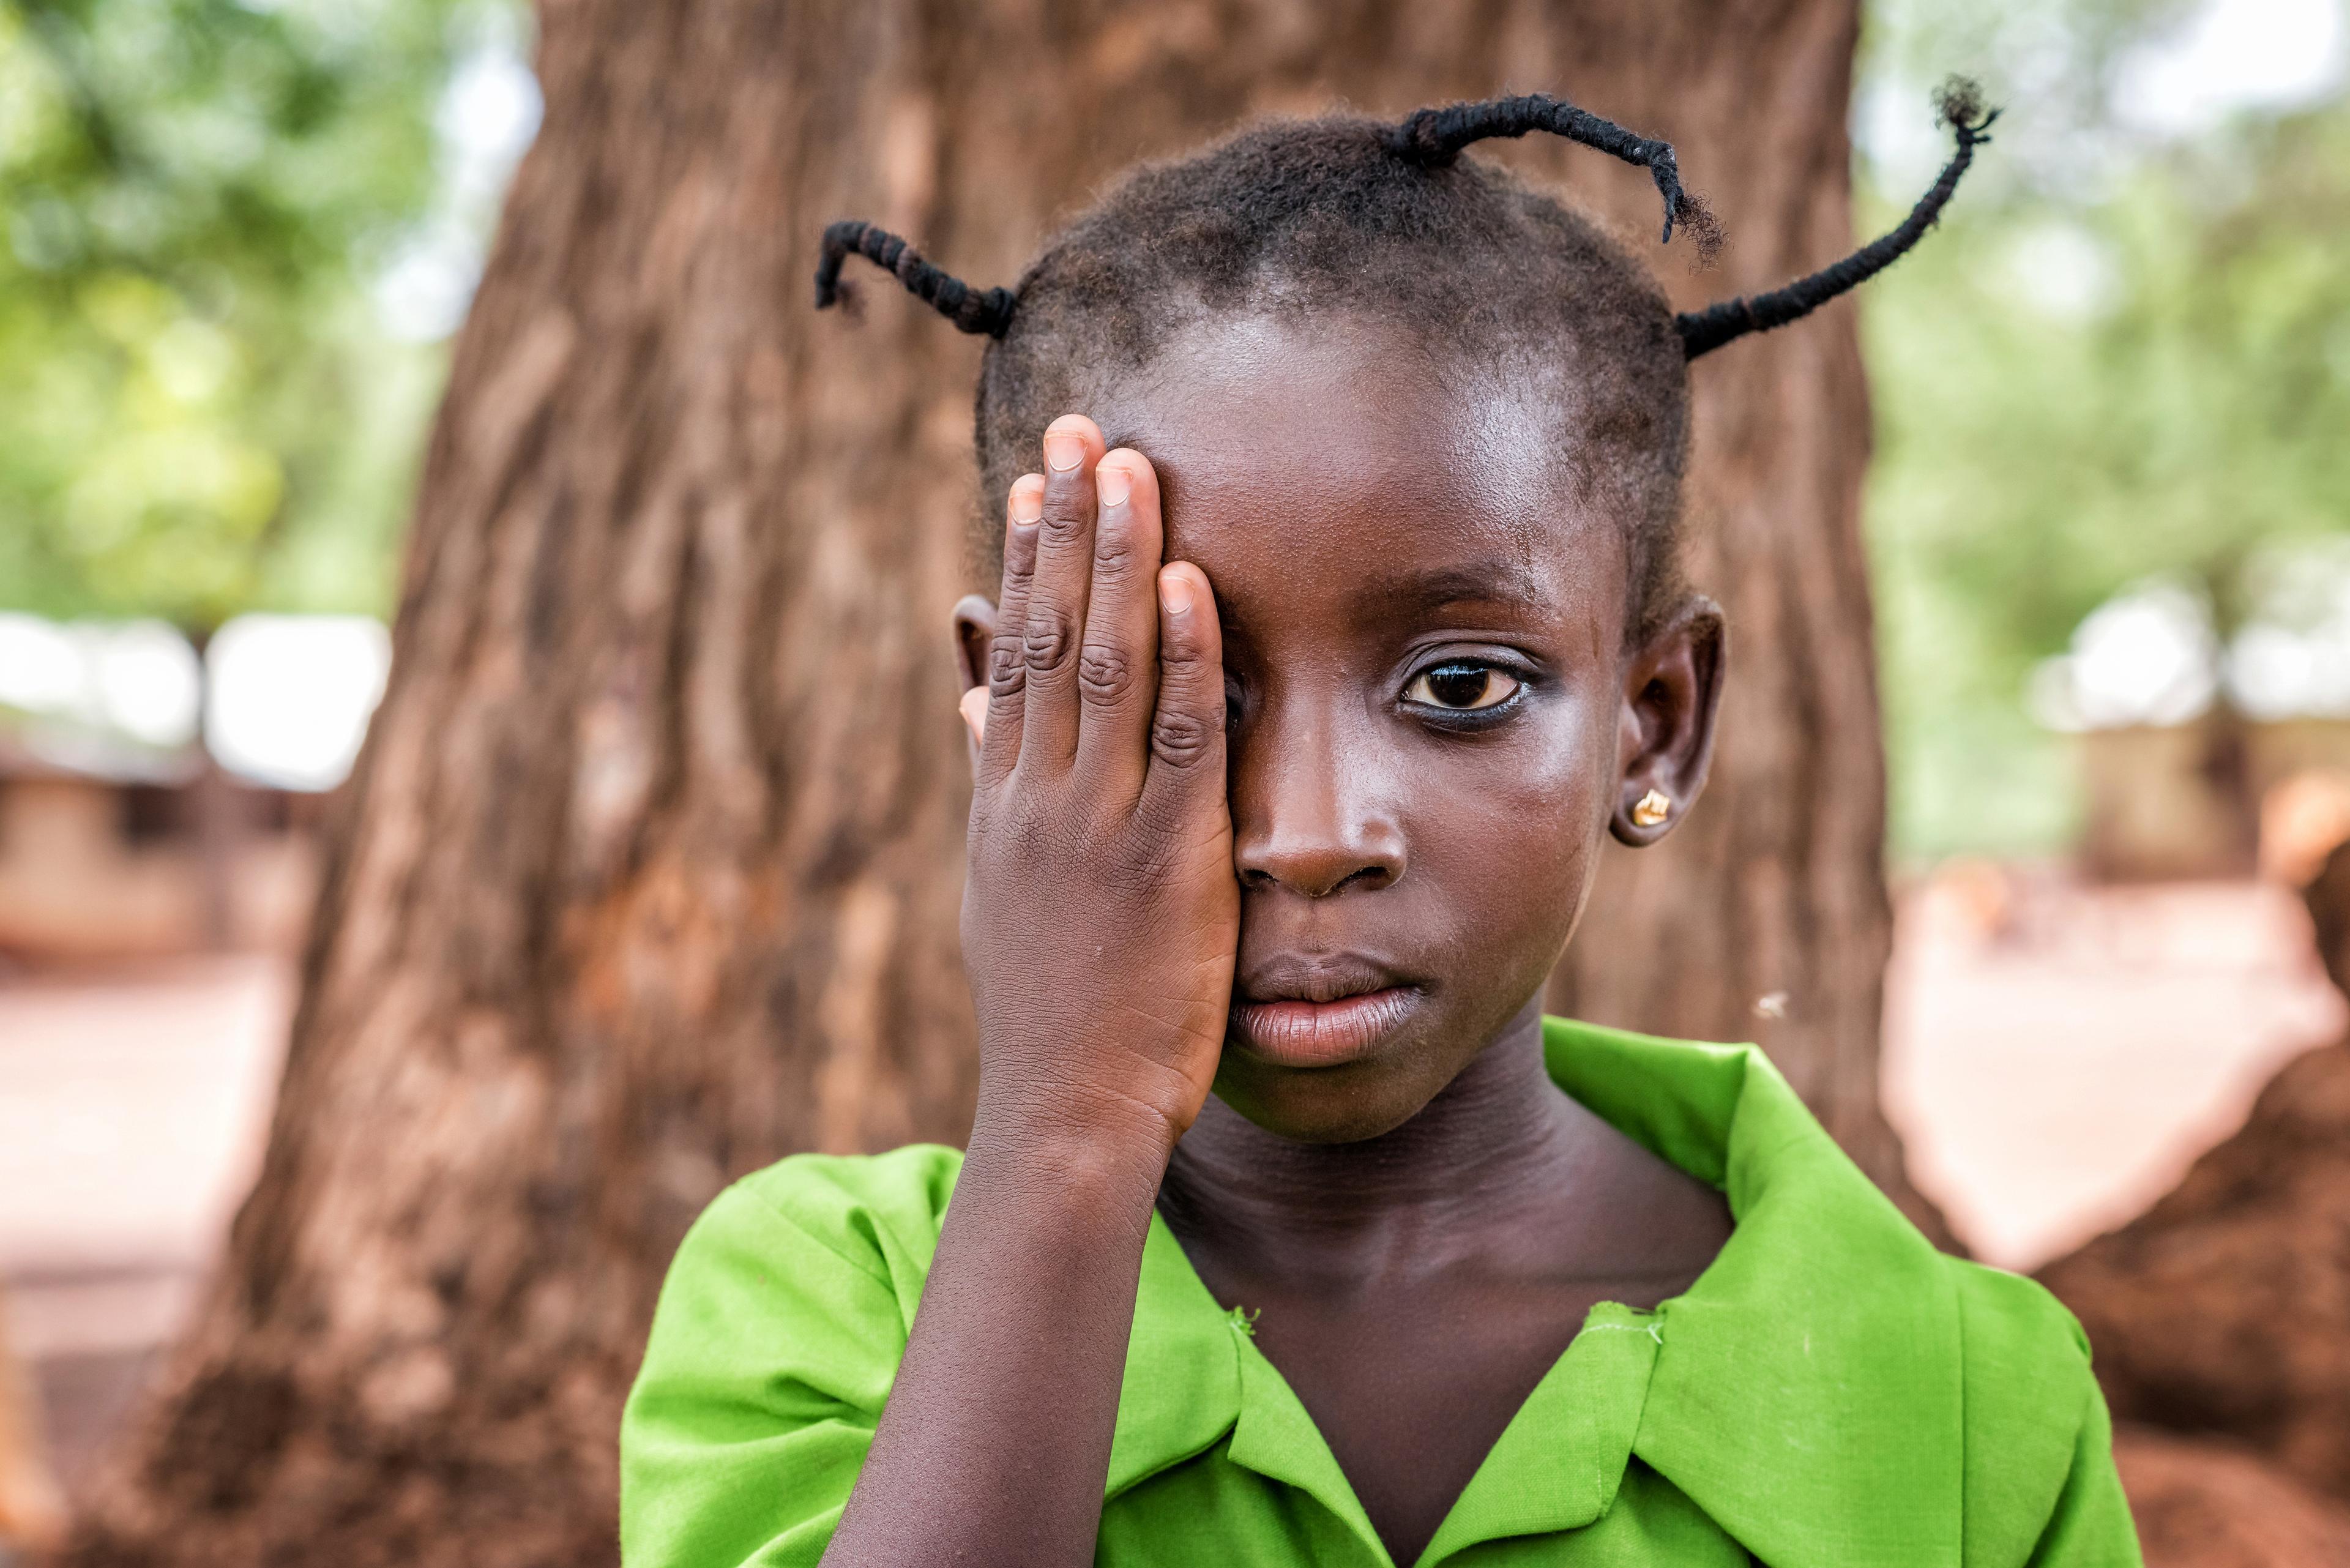 Die sechsjährige Asana beim Augentest in einer Schule bei Tamale. Sie steht vor einem imposanten Baumstamm.